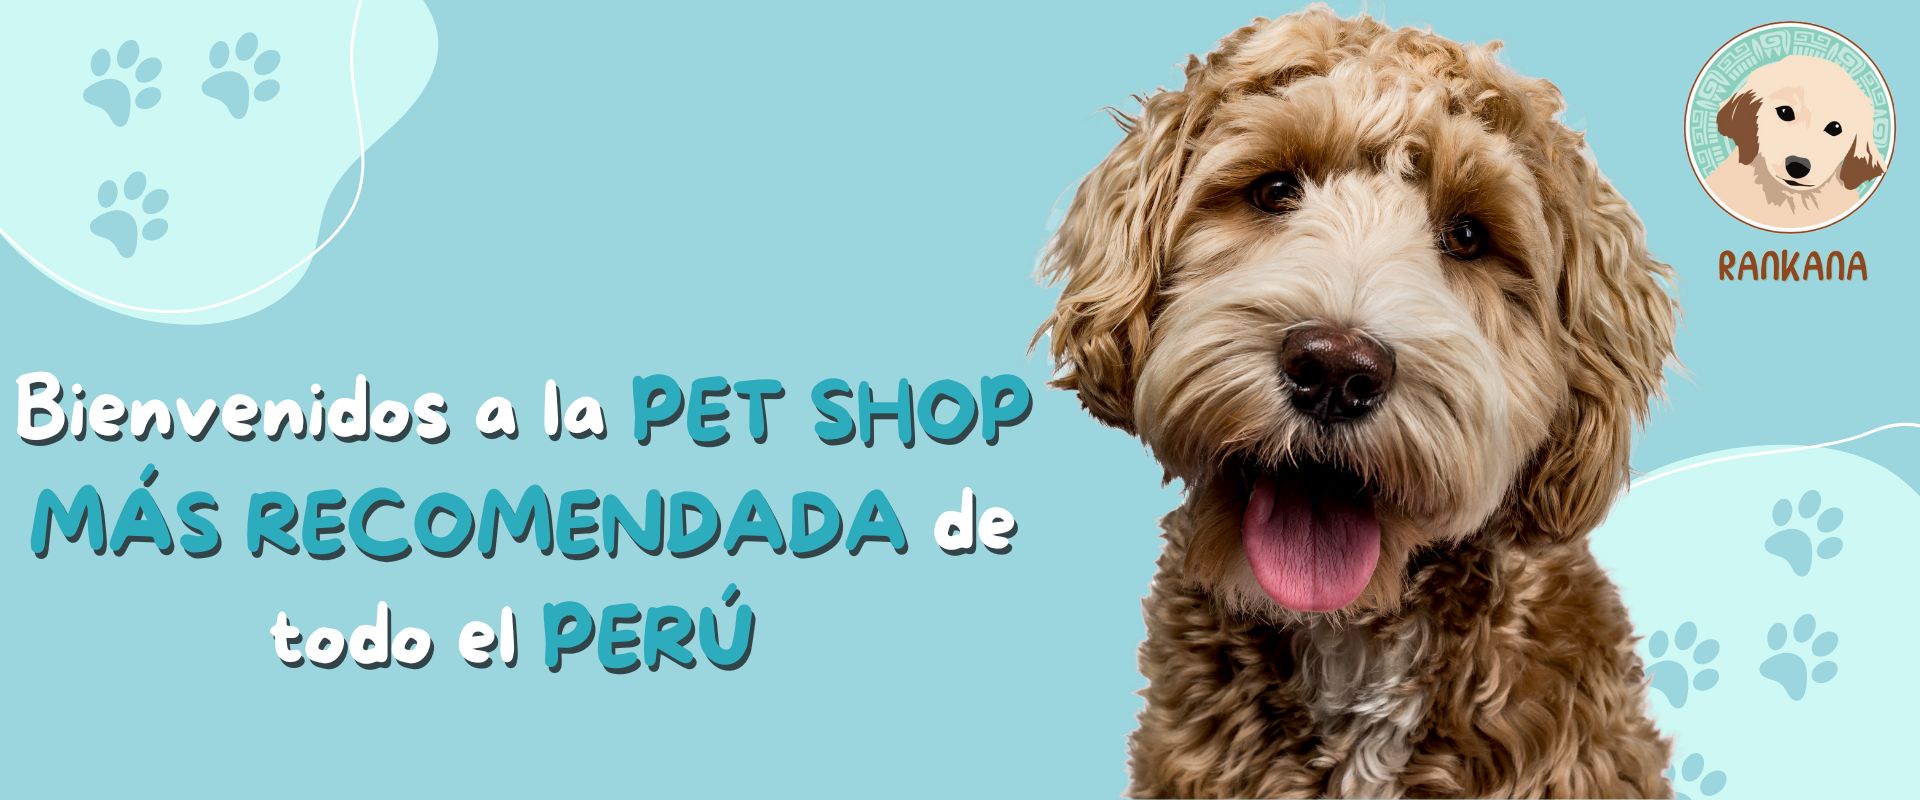 Seguro bostezando carpeta Venta de Alimentos para Mascotas - RANKANA - Tienda Online